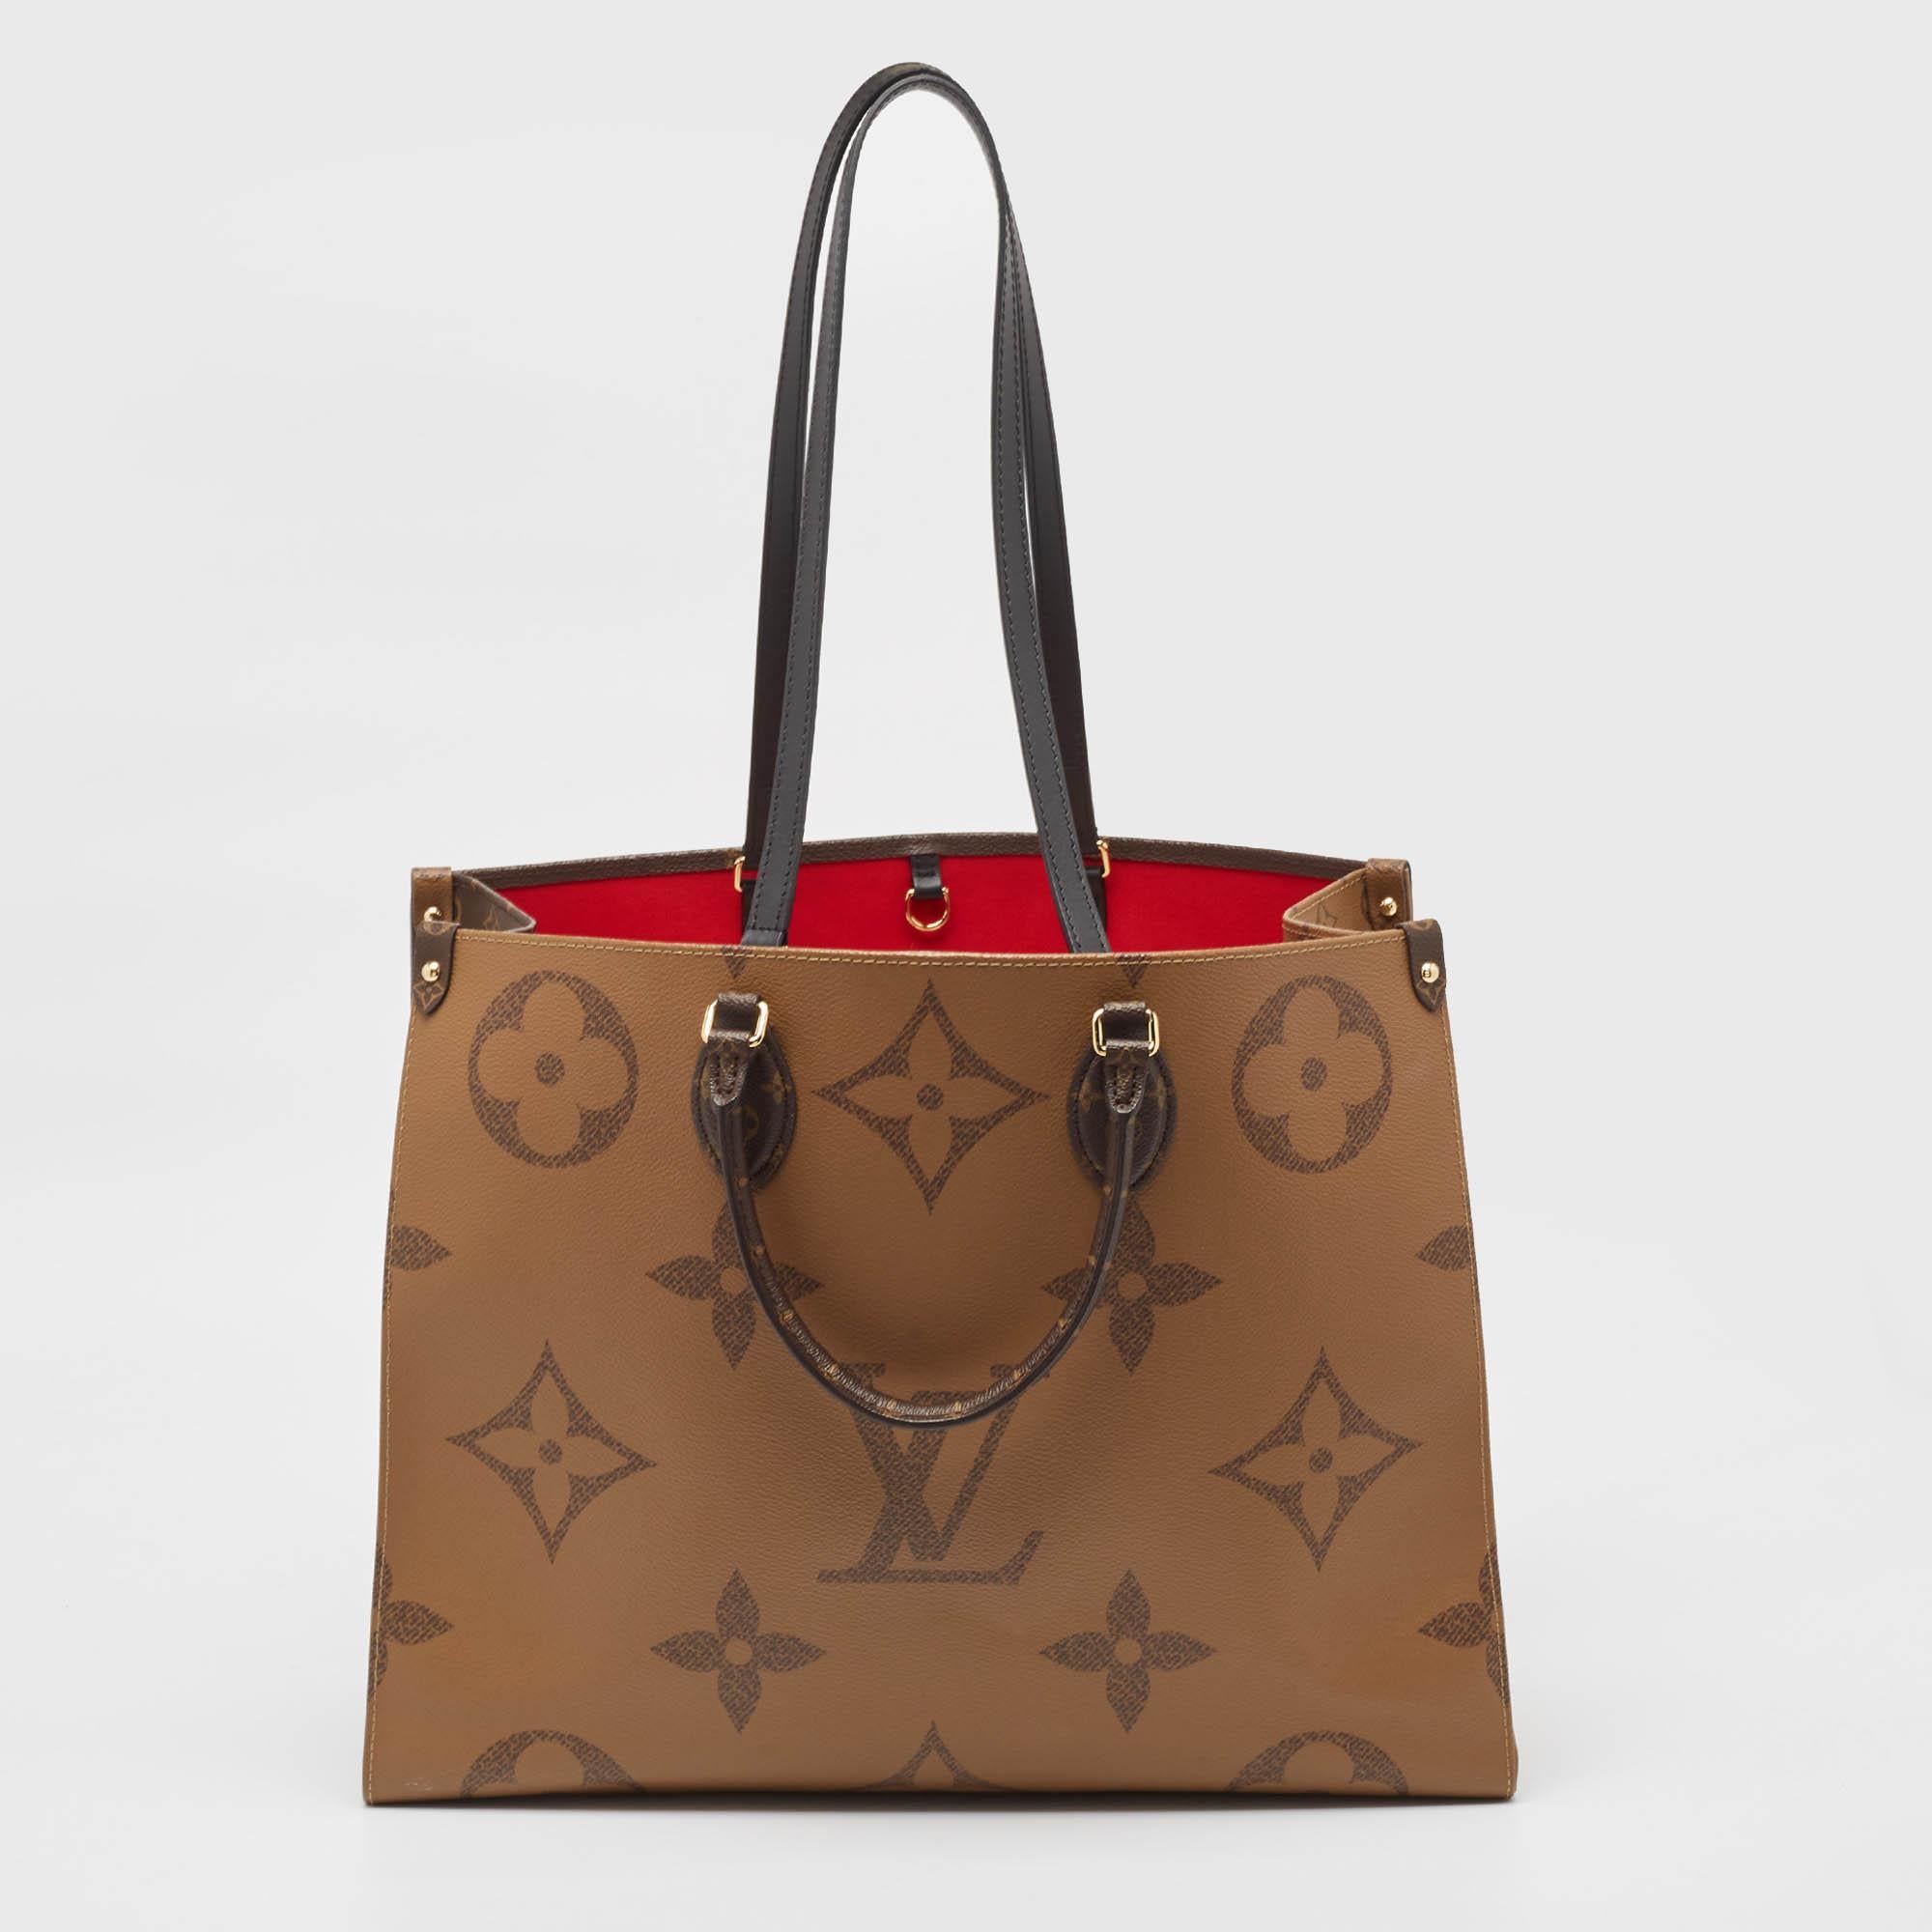 Issu de la collection capsule Monogram Giant de Louis Vuitton, ce sac Icone présente le motif emblématique dans un nouveau style. Il arbore le logo signature et des motifs floraux dans un format surdimensionné. Cette création est un fourre-tout